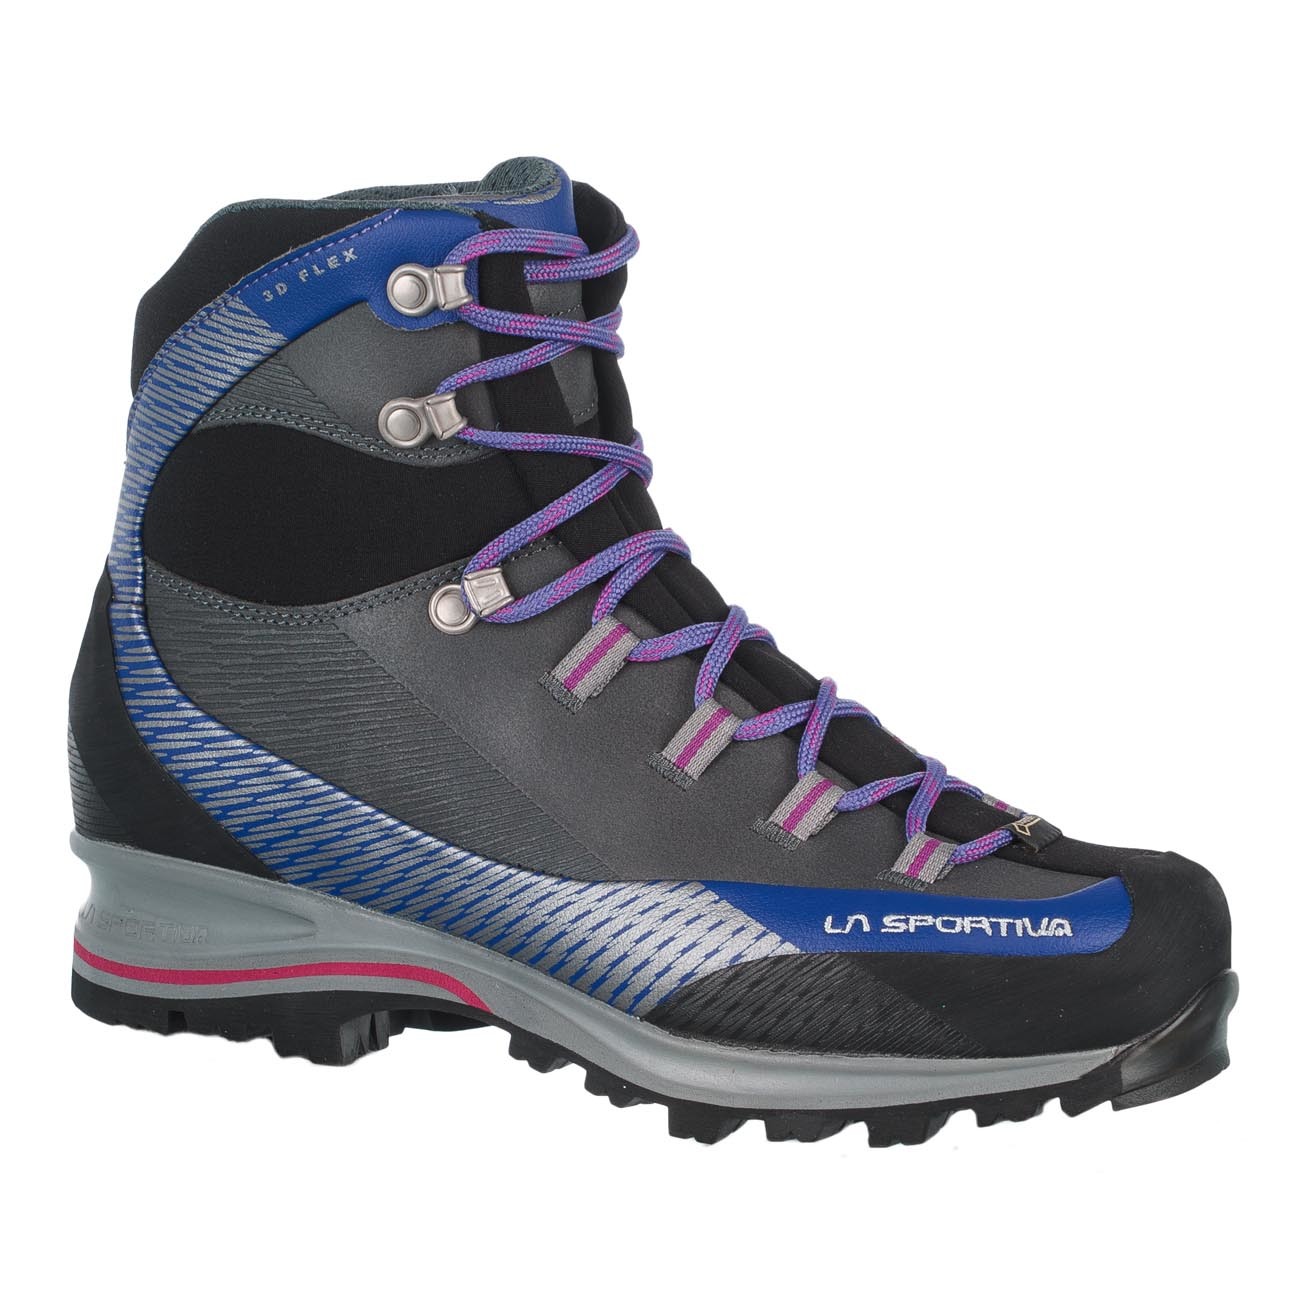 & Wanderstiefel La Sportiva Damen Trango TRK Leather Woman GTX Iris Blue/Purple Trekking 